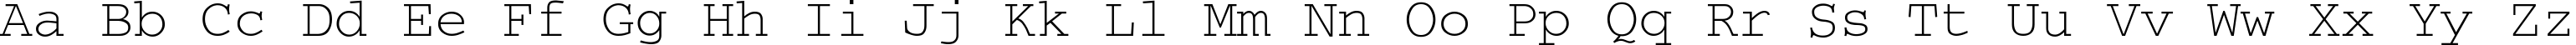 Пример написания английского алфавита шрифтом Courier